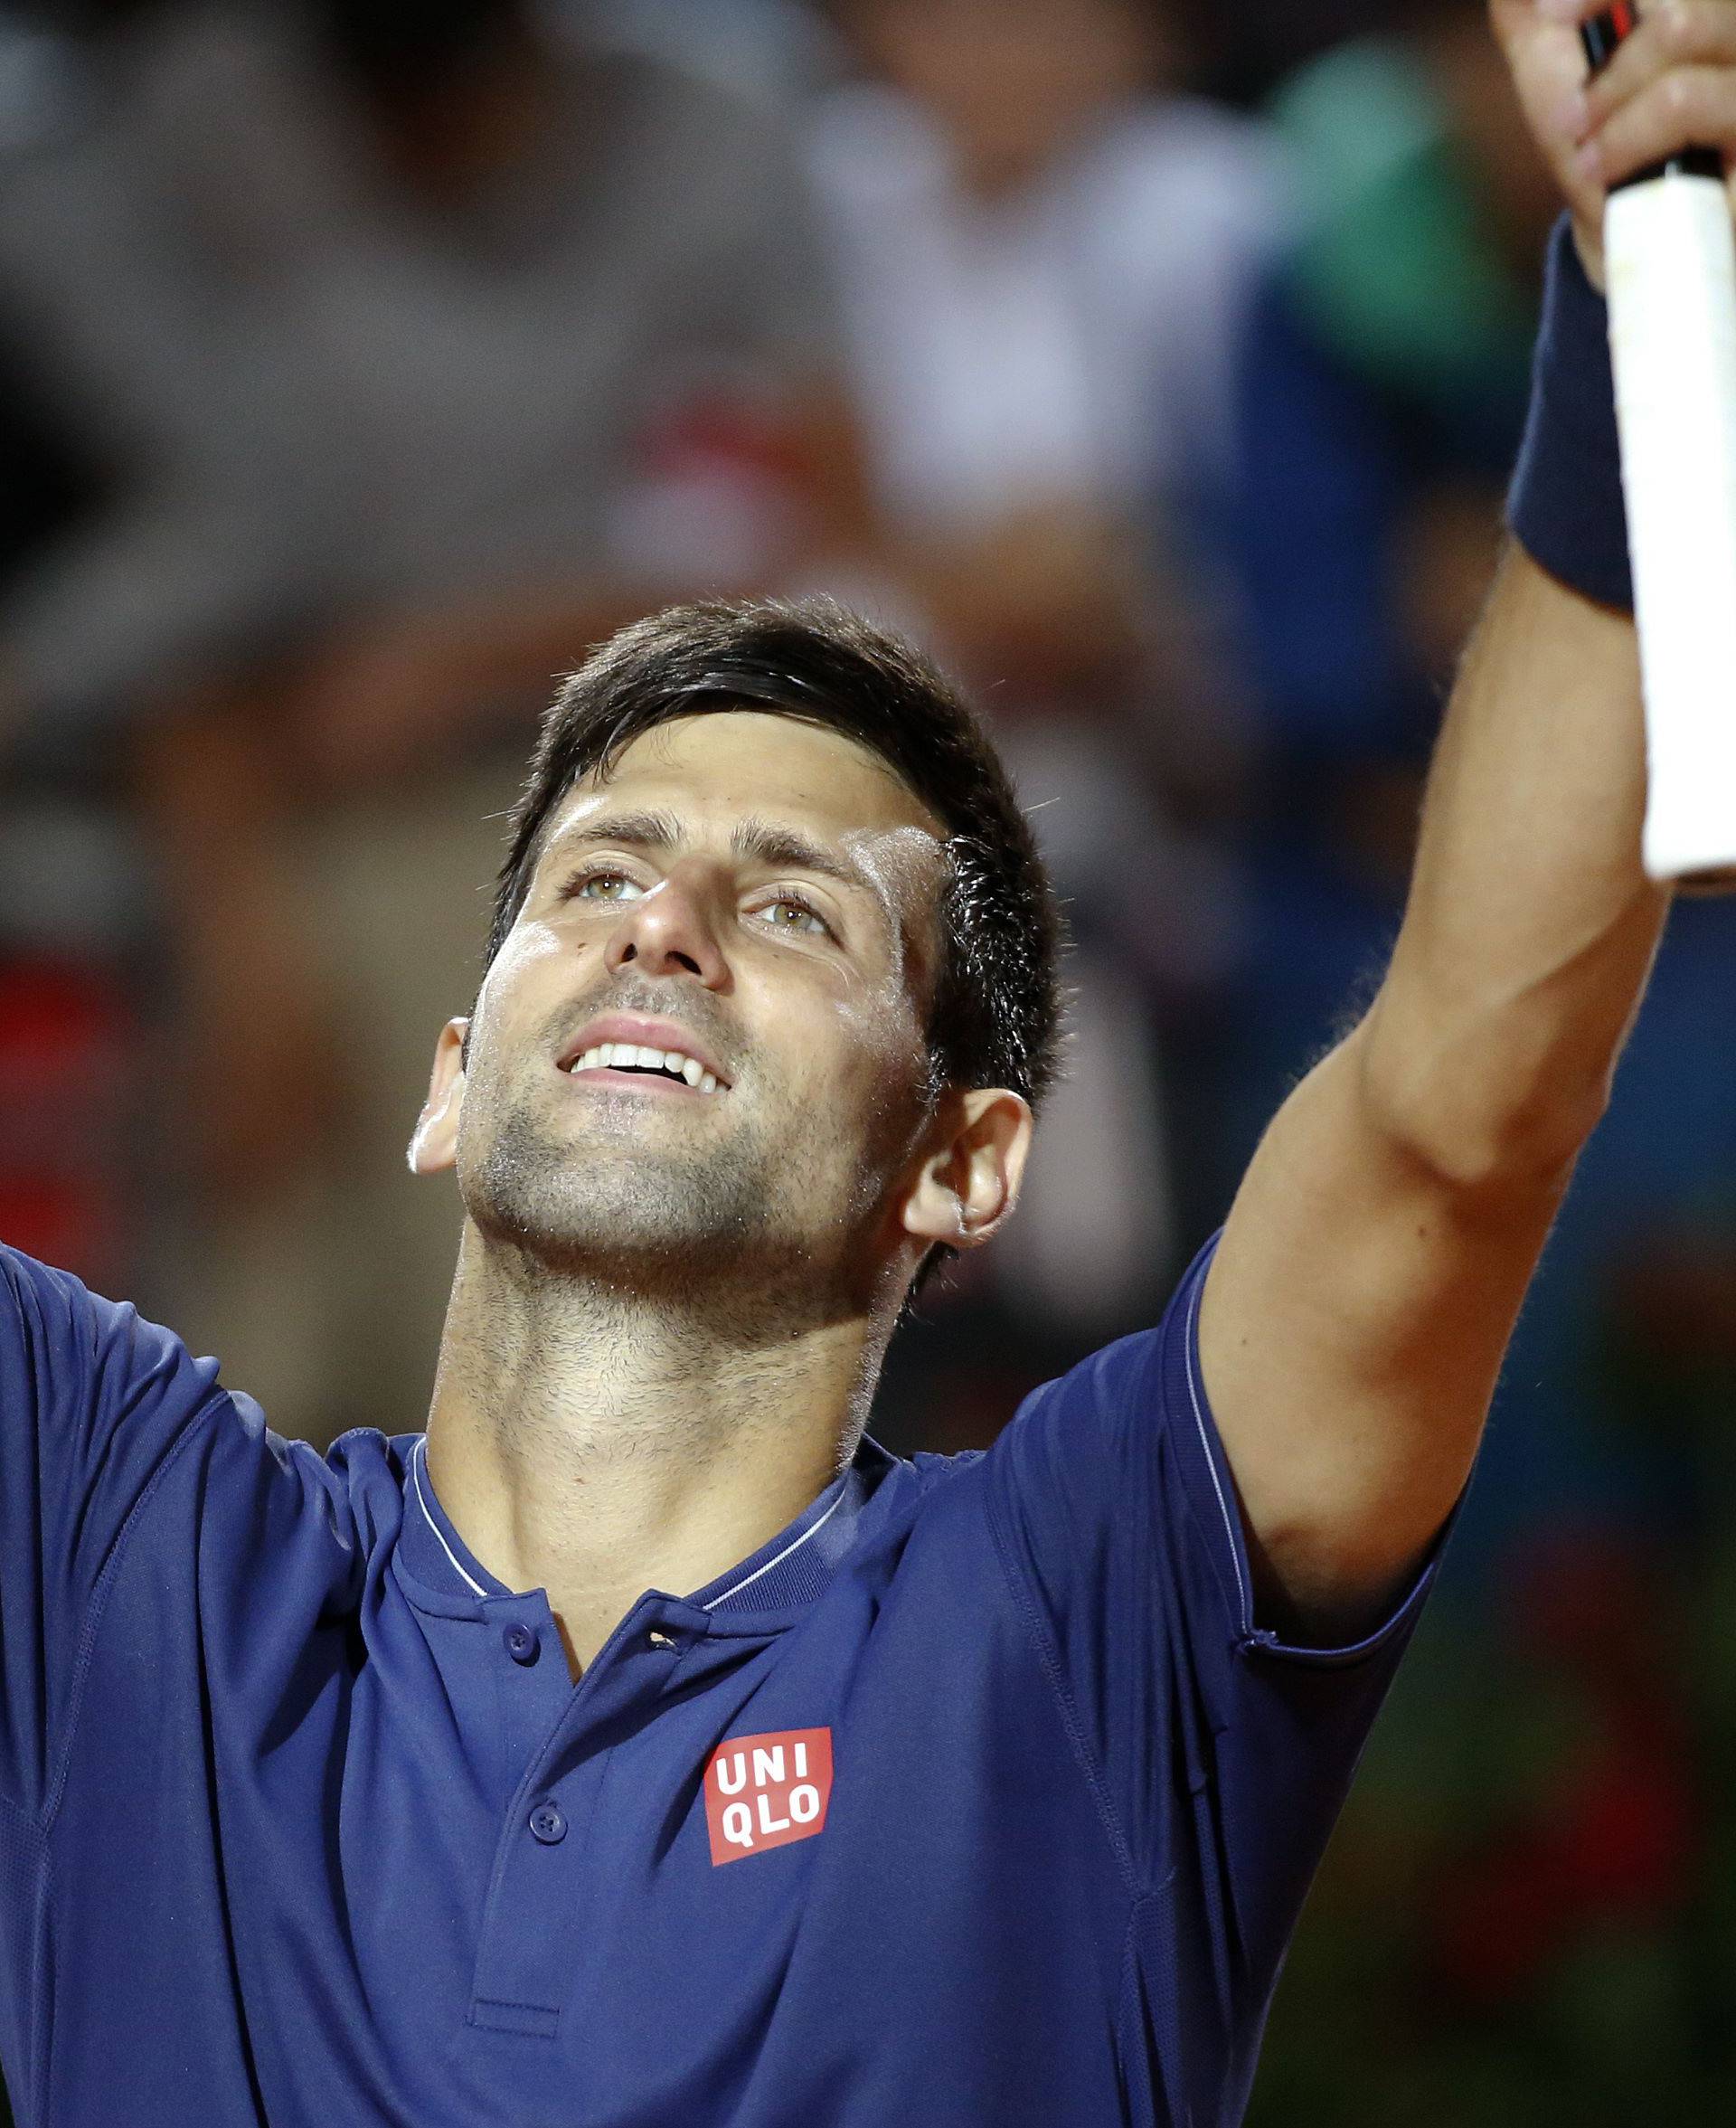 Tennis - ATP - Rome Open - Novak Djokovic of Serbia v Dominic Thiem of Austria